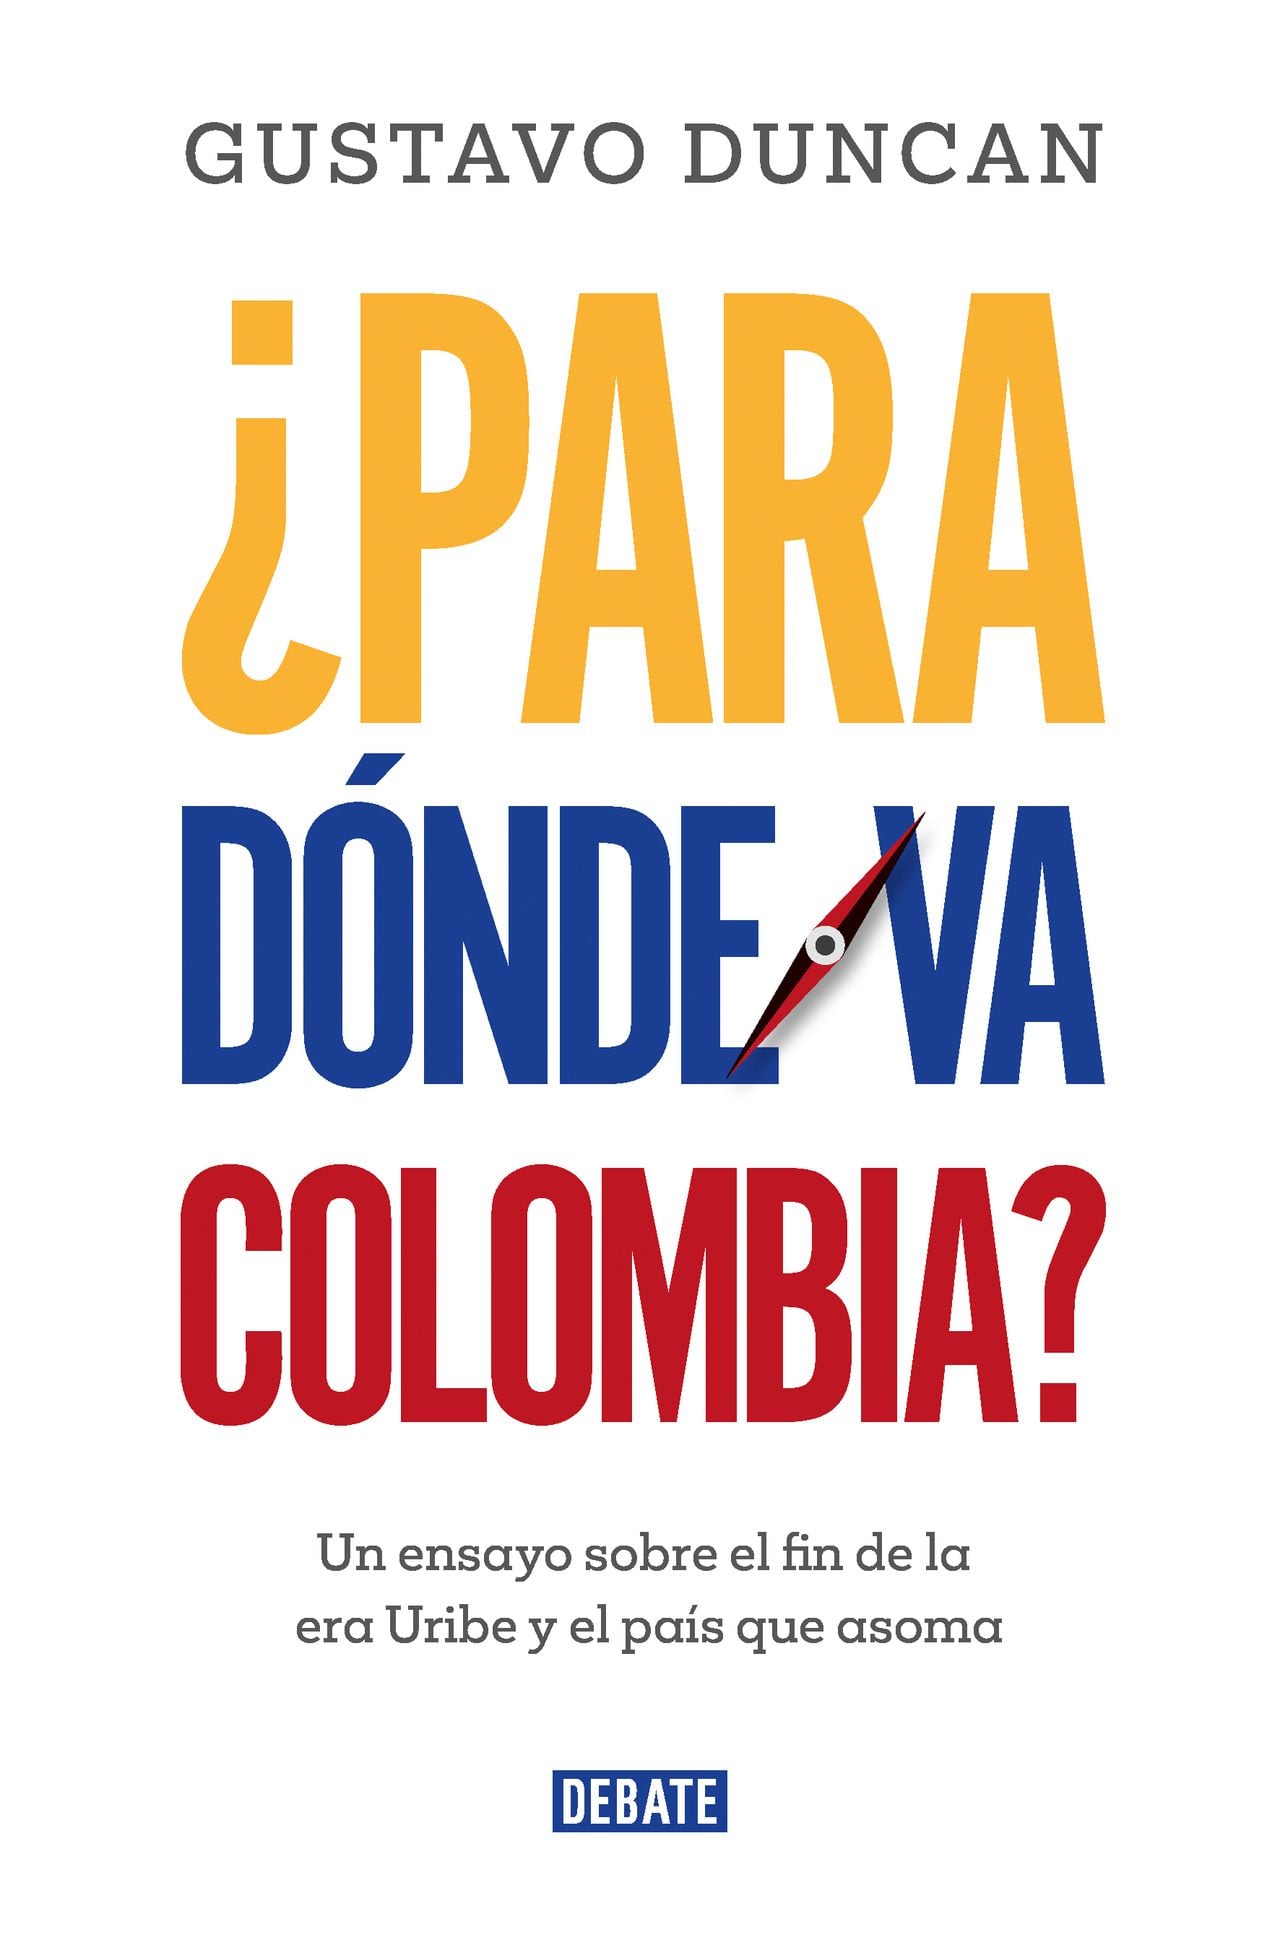 ¿Para dónde va Colombia? Un ensayo sobre el fin de la era Uribe y el país que asoma
Gustavo Duncan
Debate